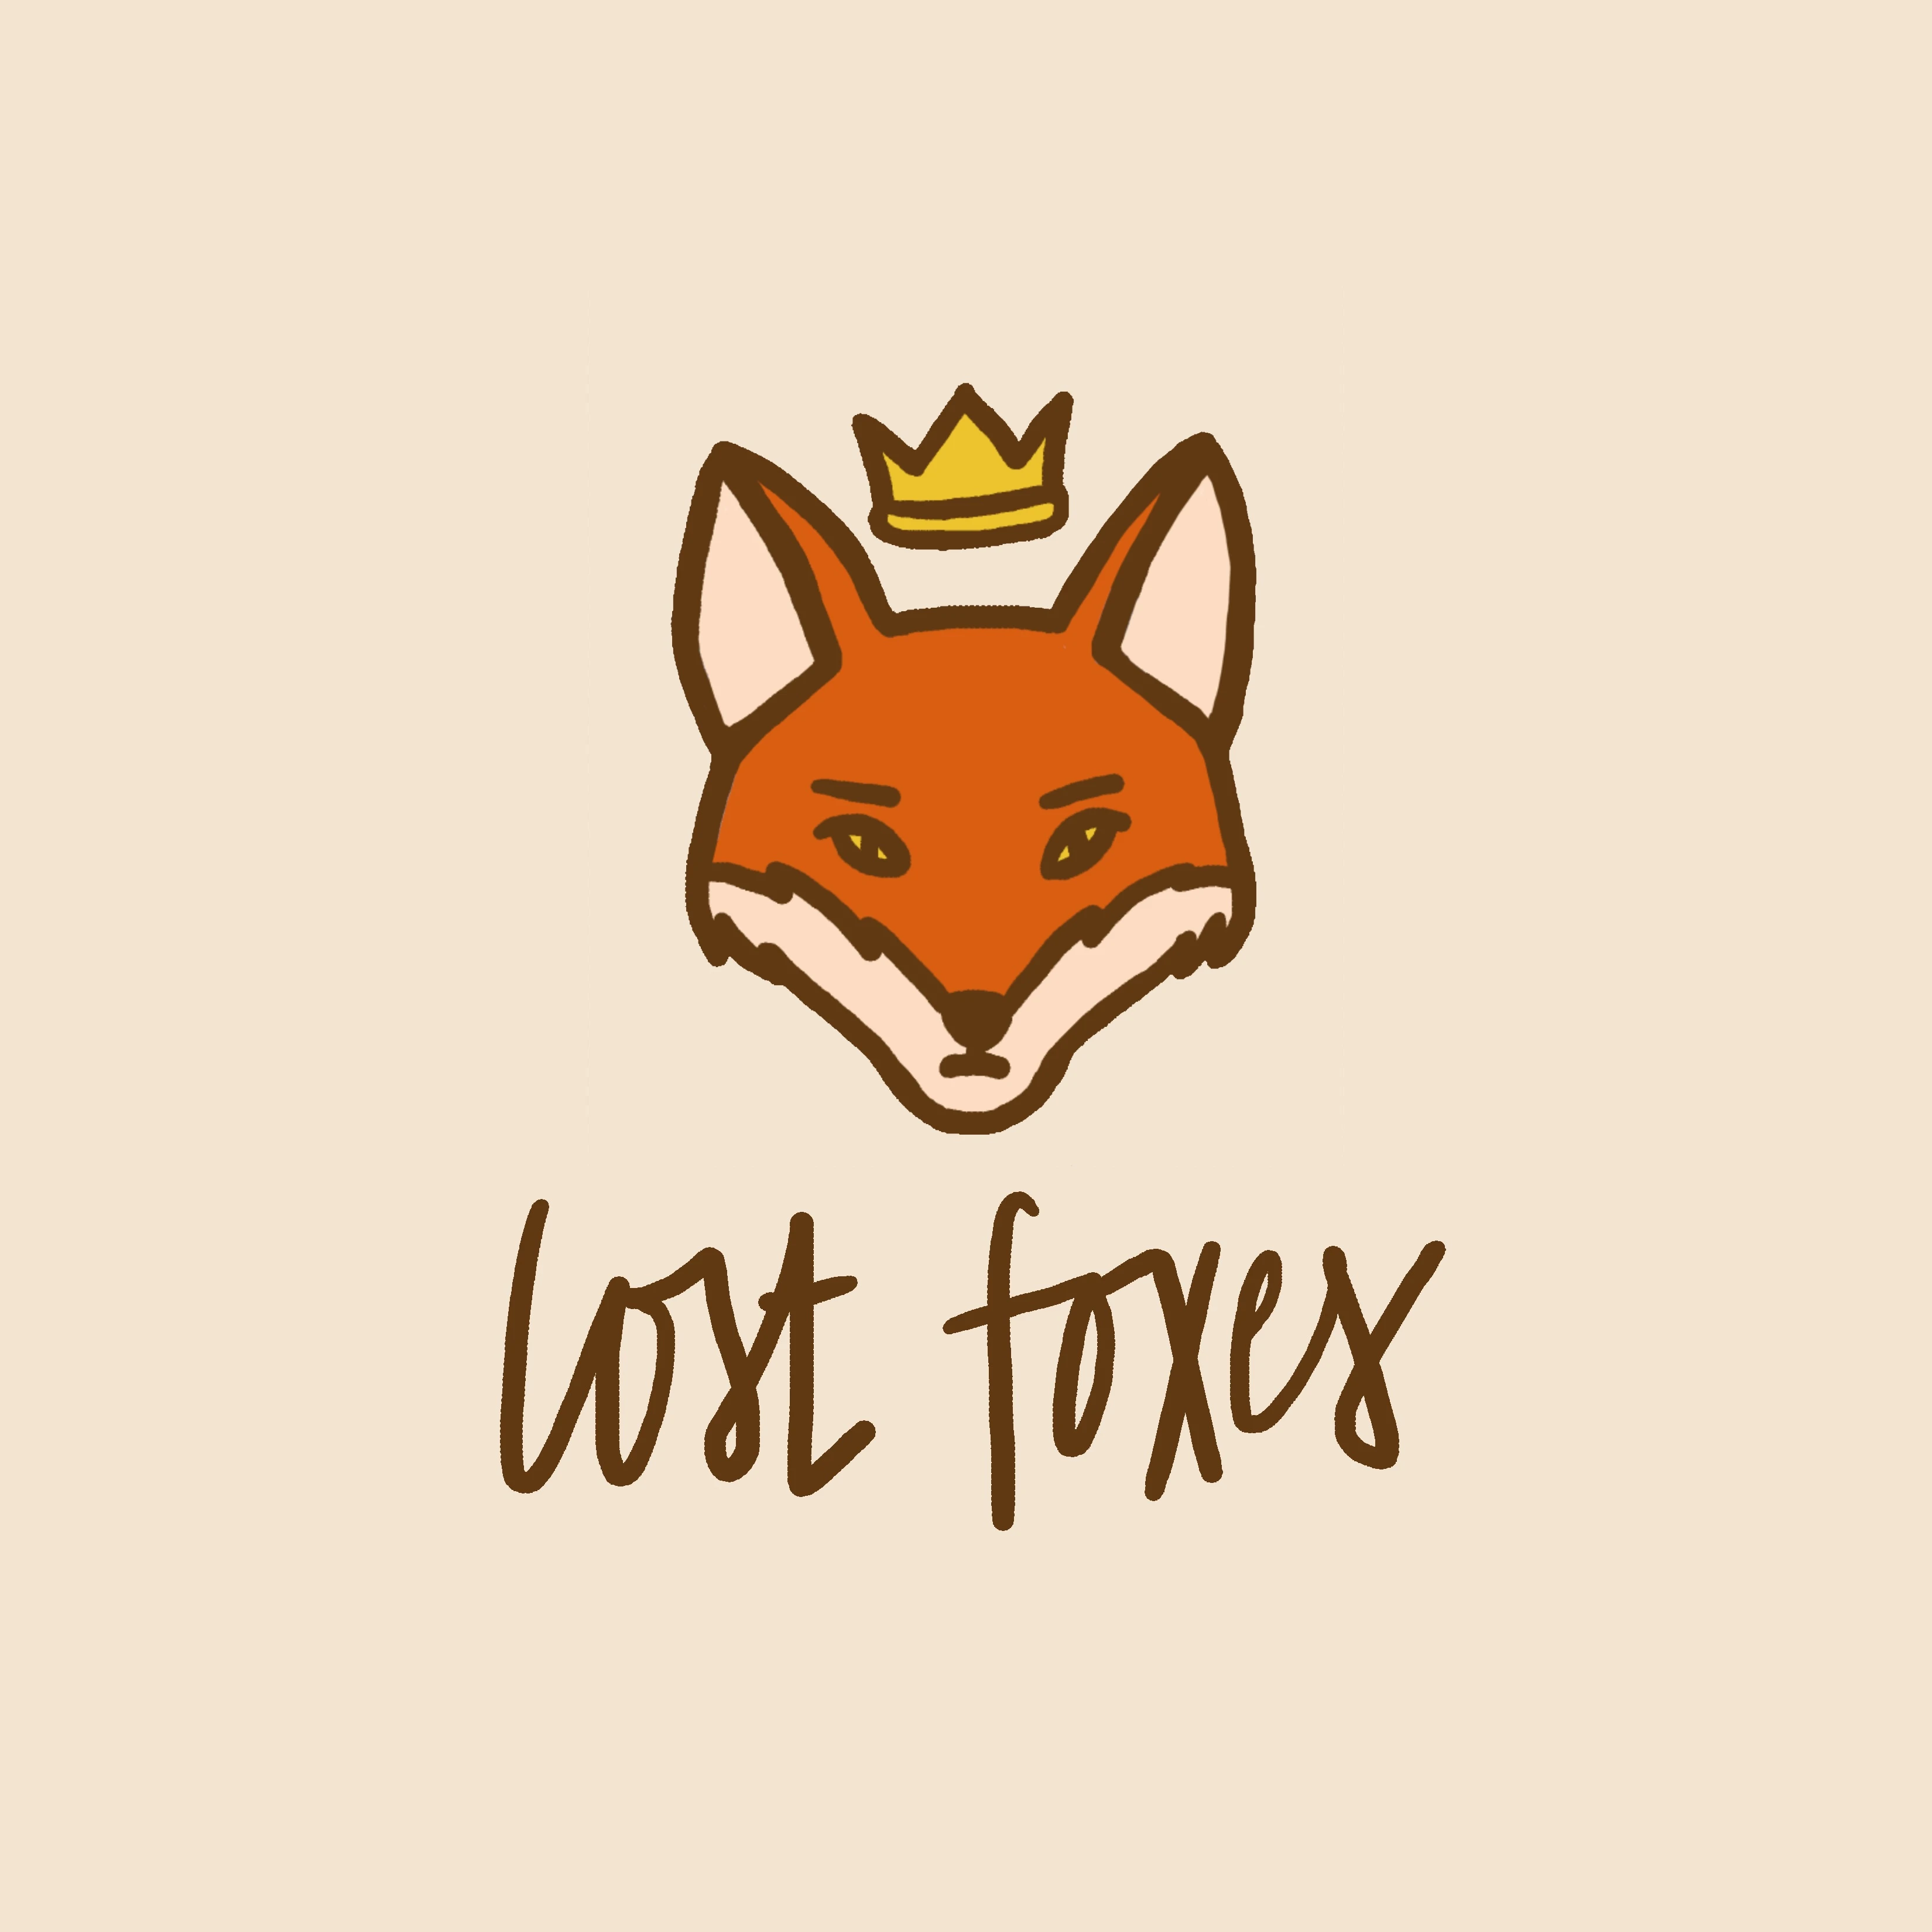 295-lost-foxes-album-artjpg-17157991324946.jpg